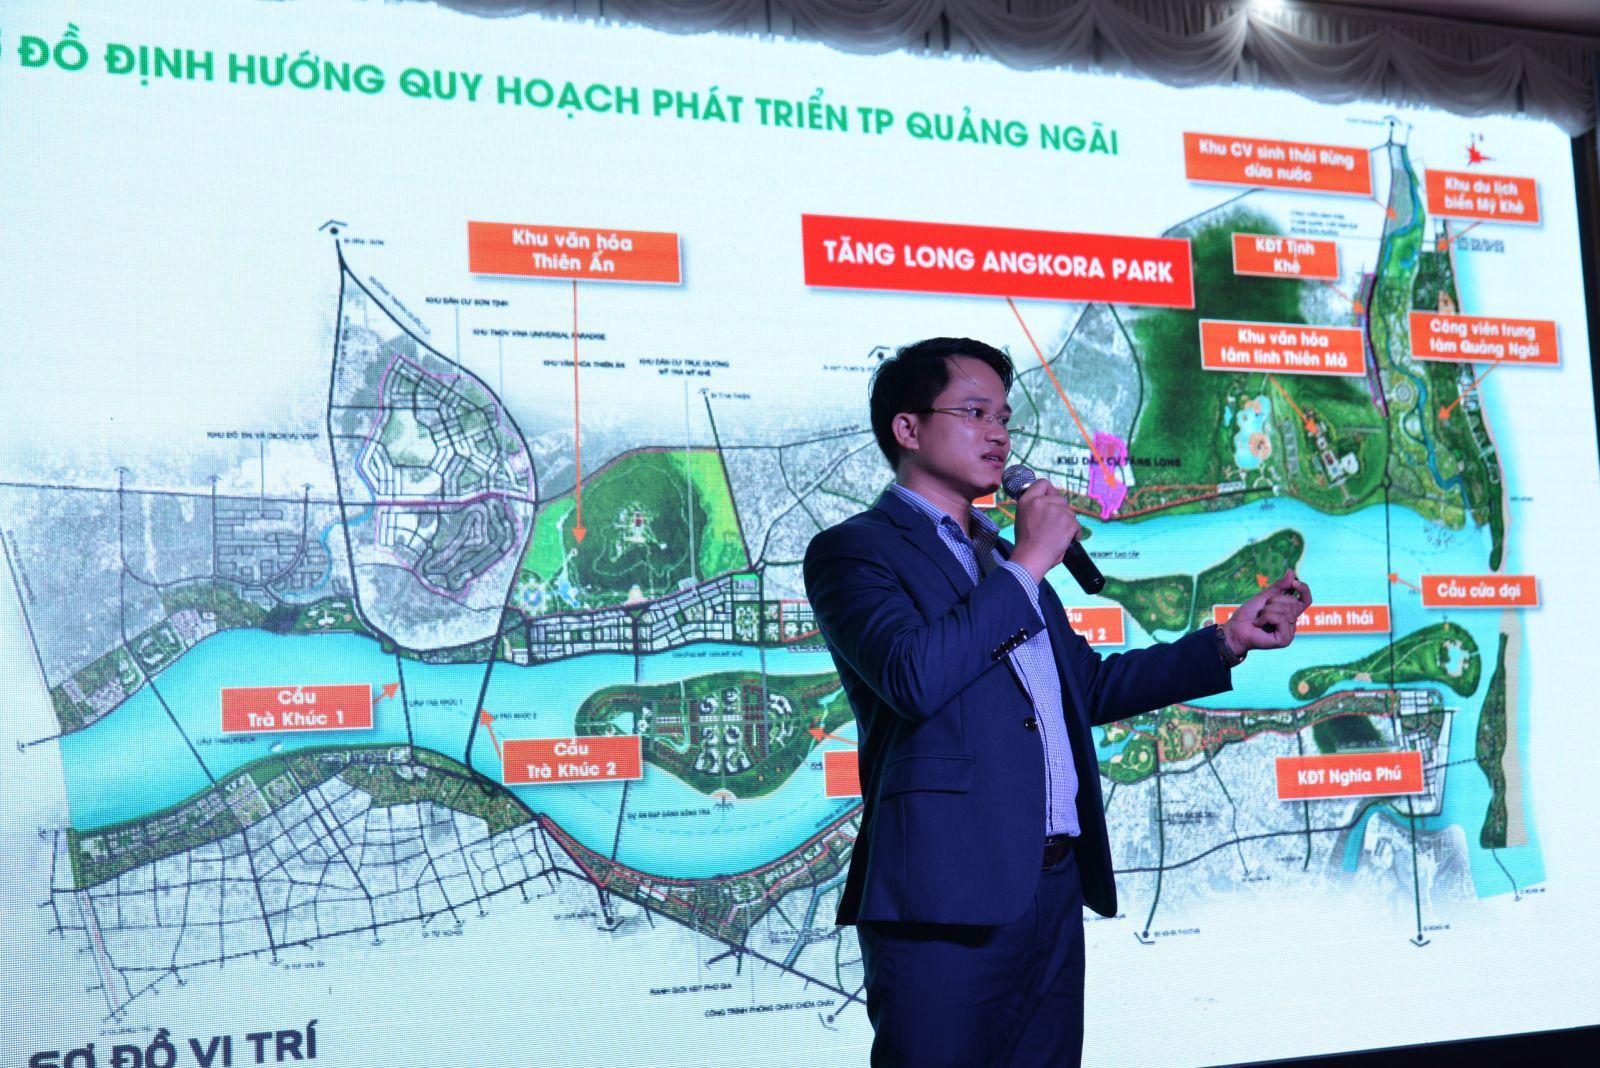 ĐẤT XANH ĐÀ NẴNG RA MẮT THÀNH CÔNG DỰ ÁN KHU ĐÔ THỊ XANH TĂNG LONG ANGKORA PARK – QUẢNG NGÃI - Viet Nam Smart City